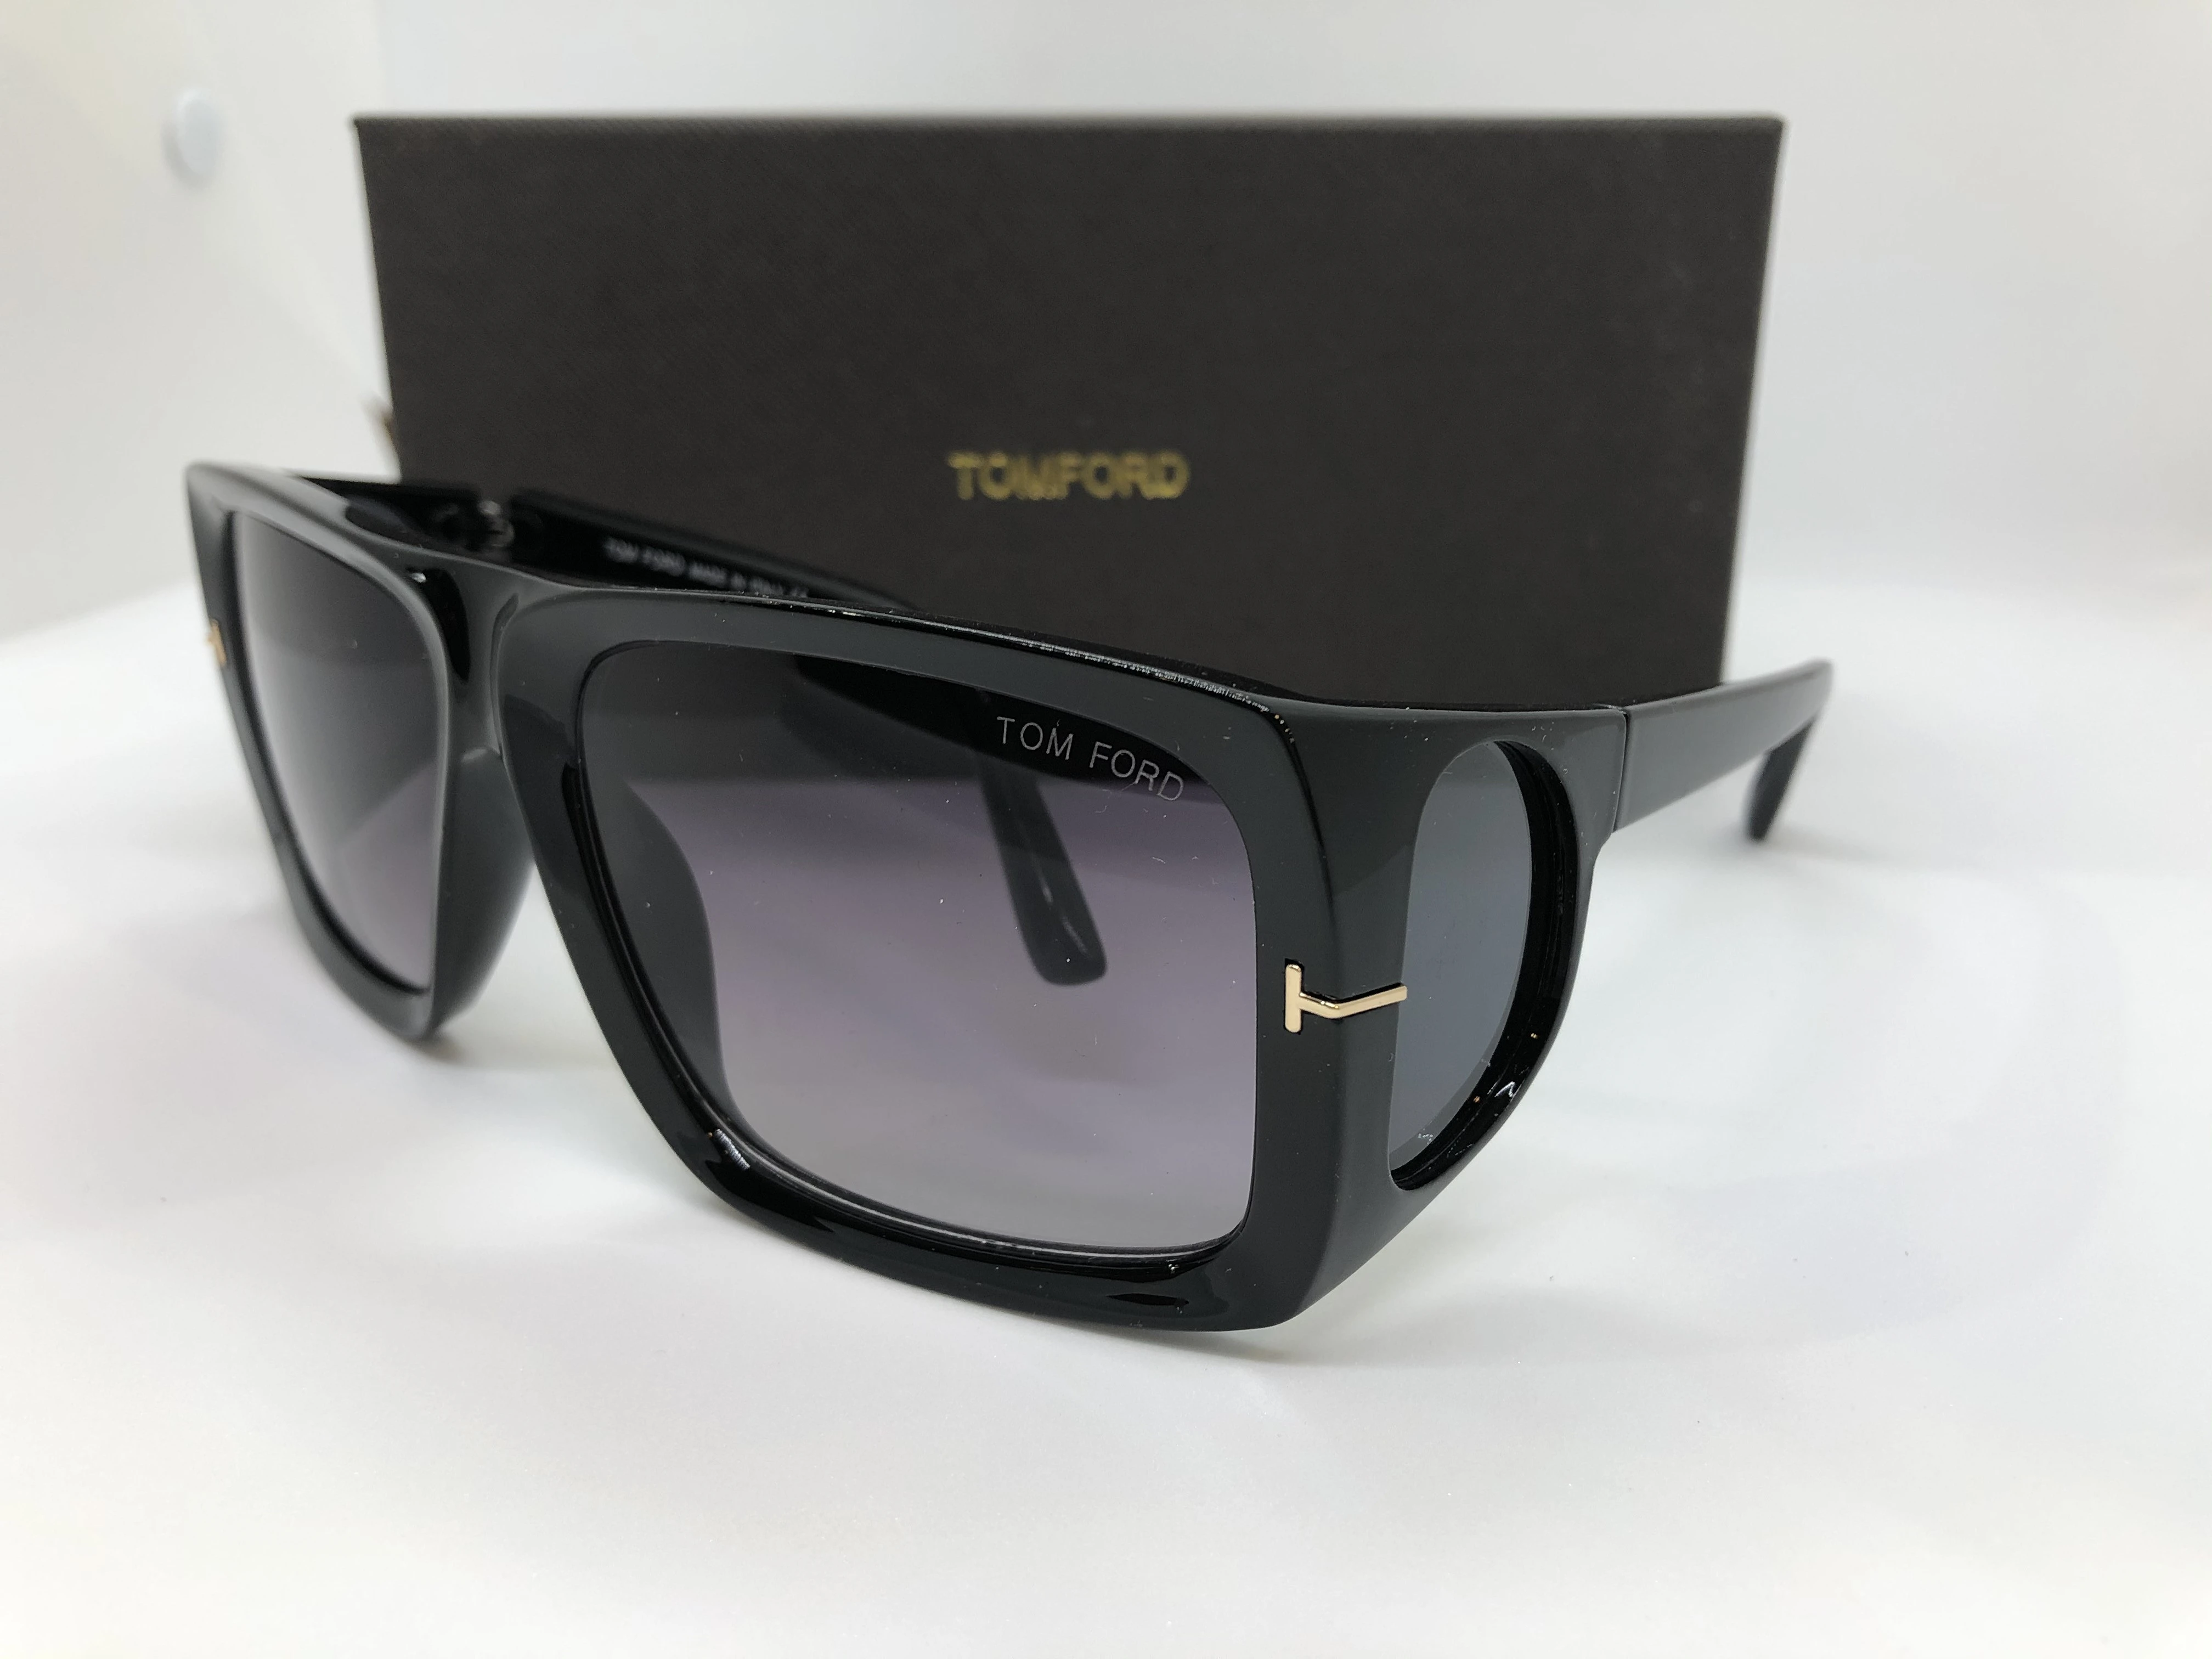 نظارة شمسية - من توم فورد - باطار اسود بولي كاربونات - وعدسات سوداء متدرج - وزراع بولي كاربونات اسود - حريمي